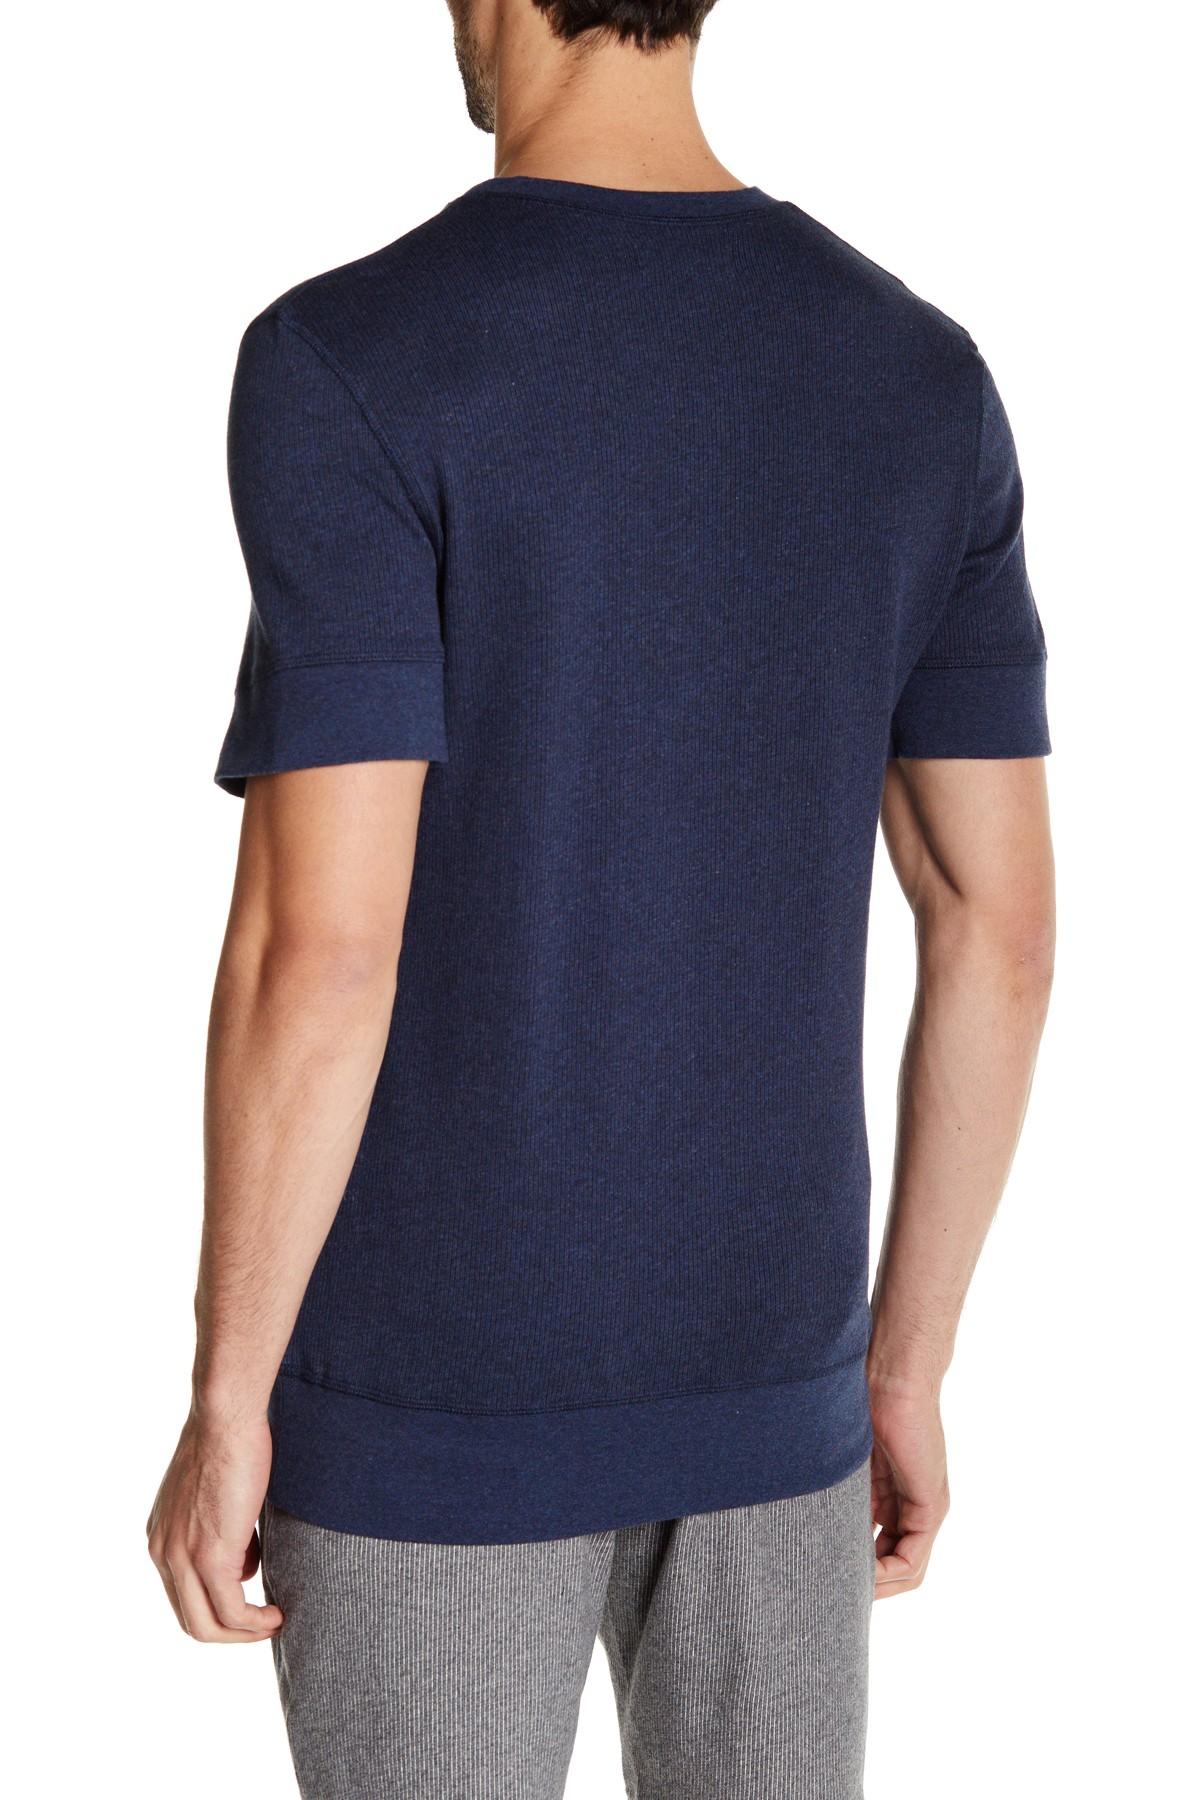 Aliexpress.com : Buy 2017 Summer Fashion Men's T Shirt